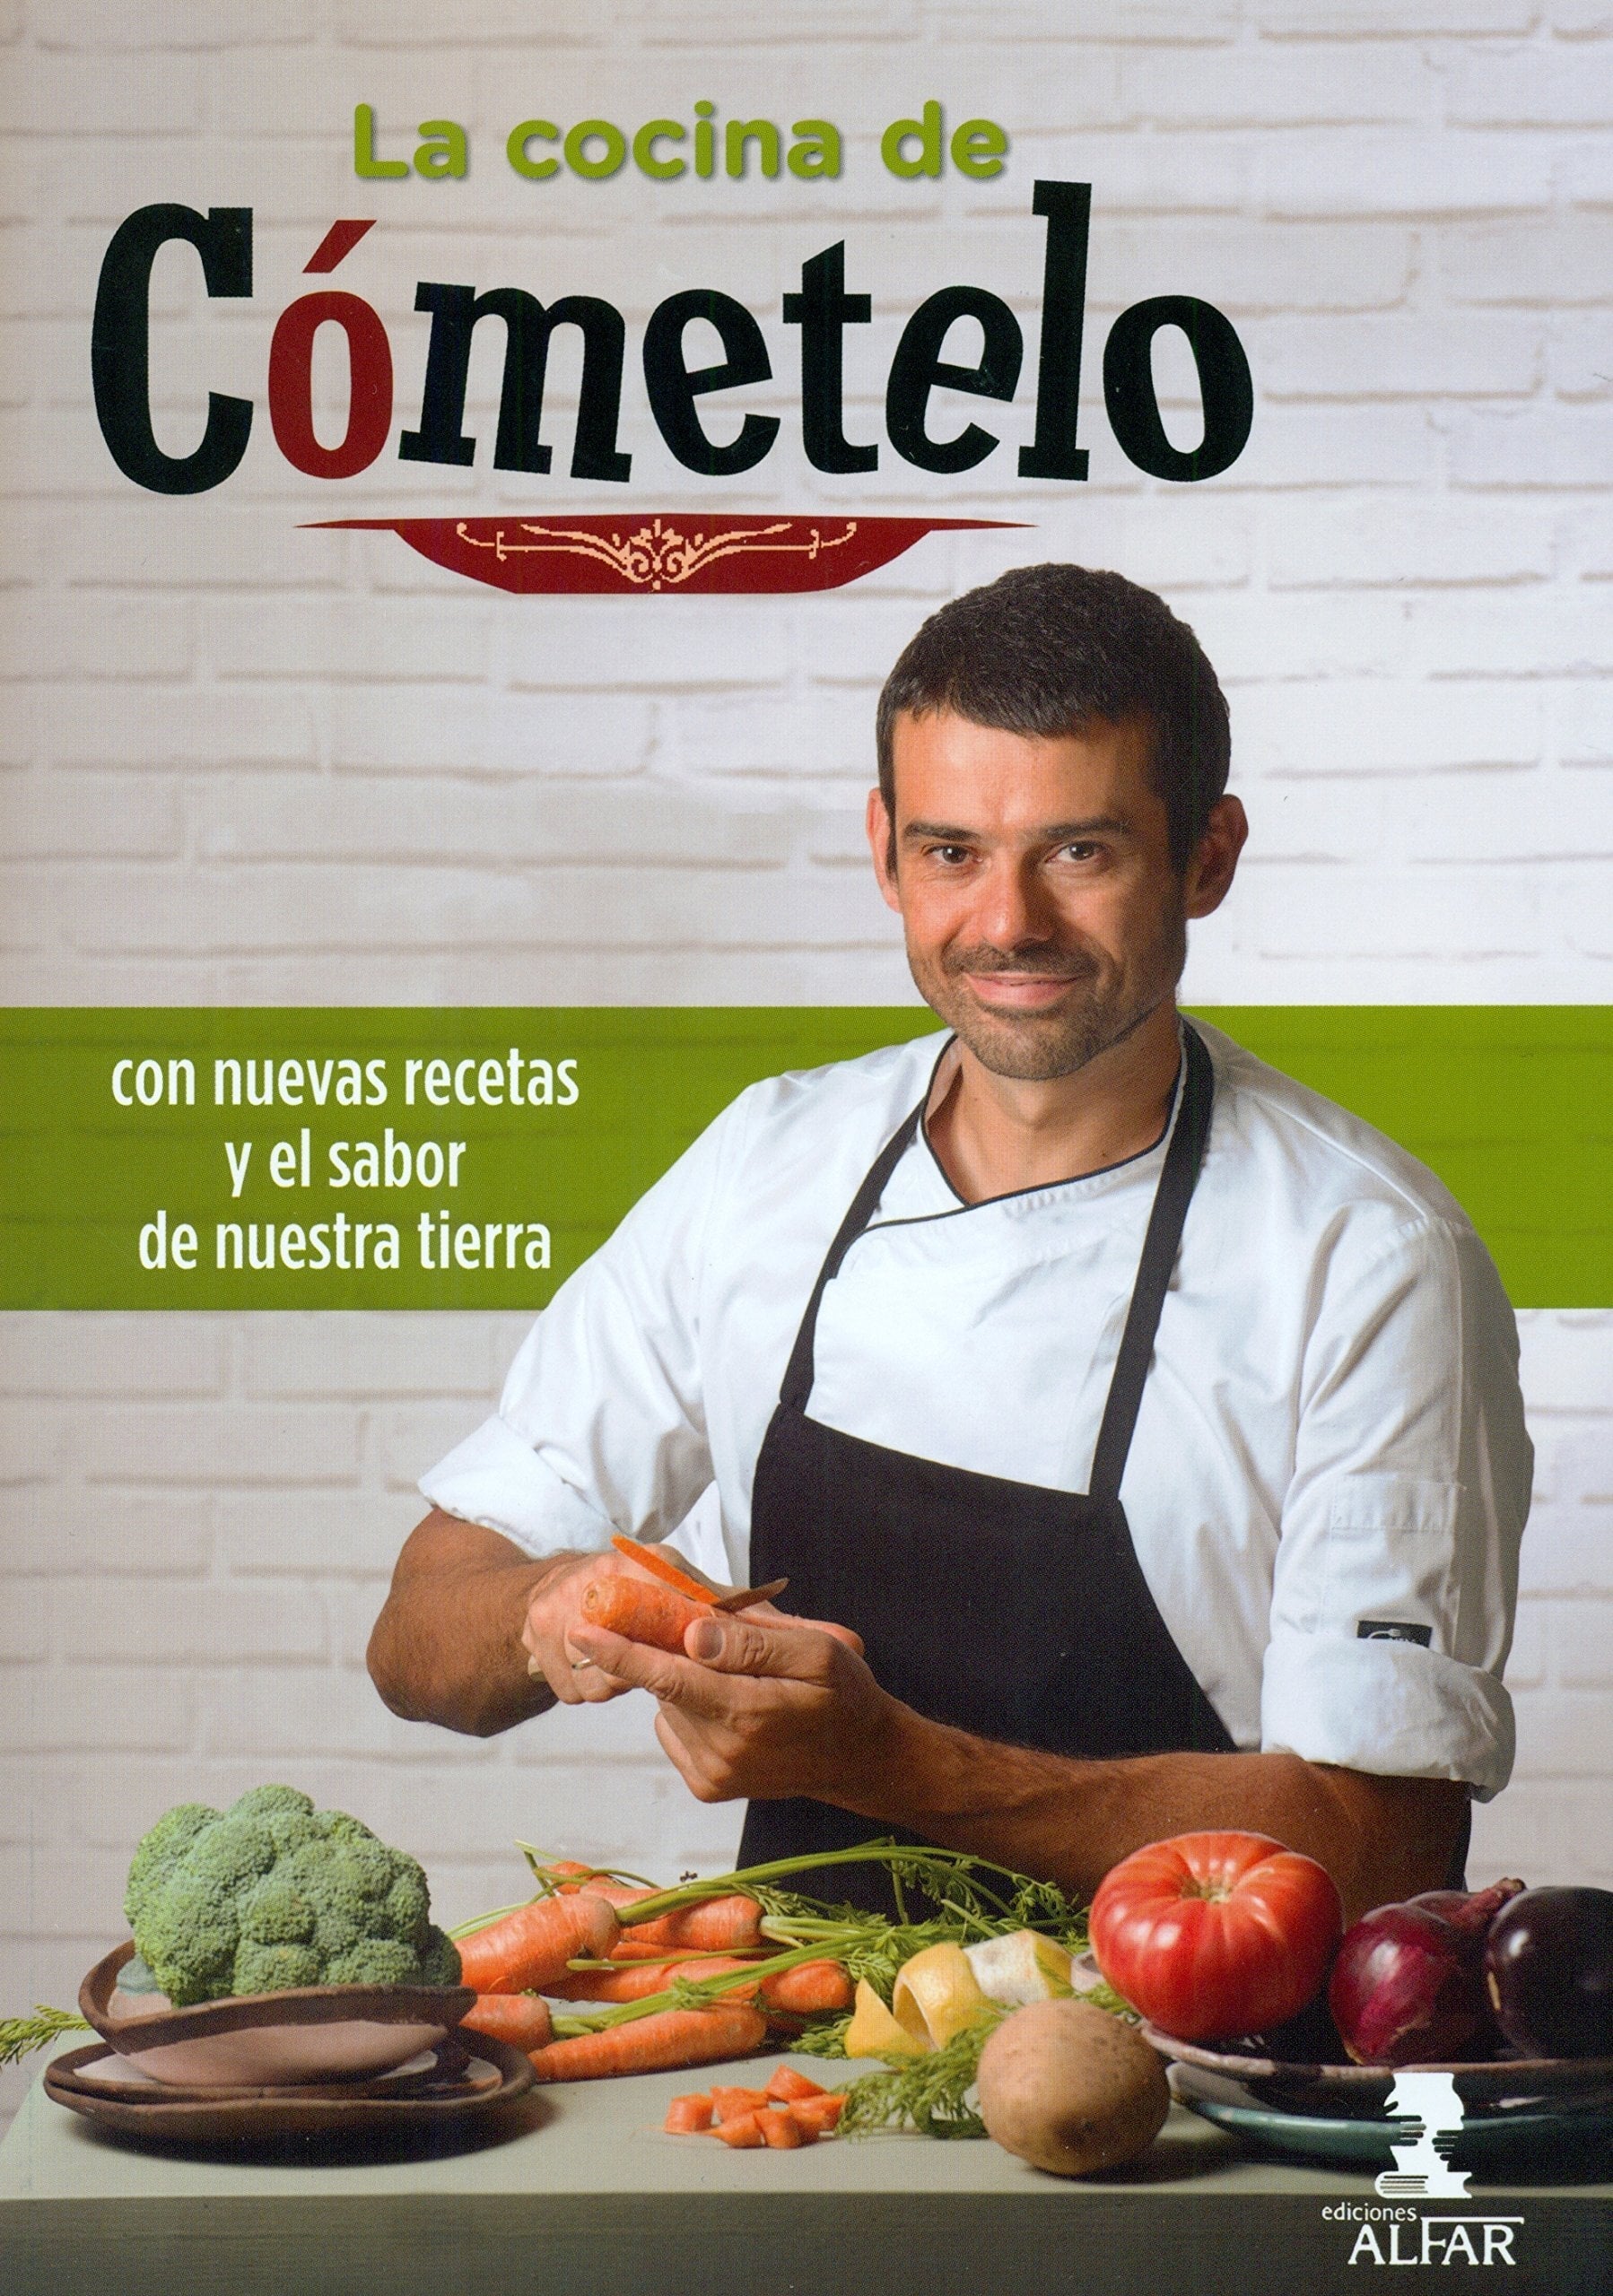 Cómetelo (готовим с Энрике Санчесом)